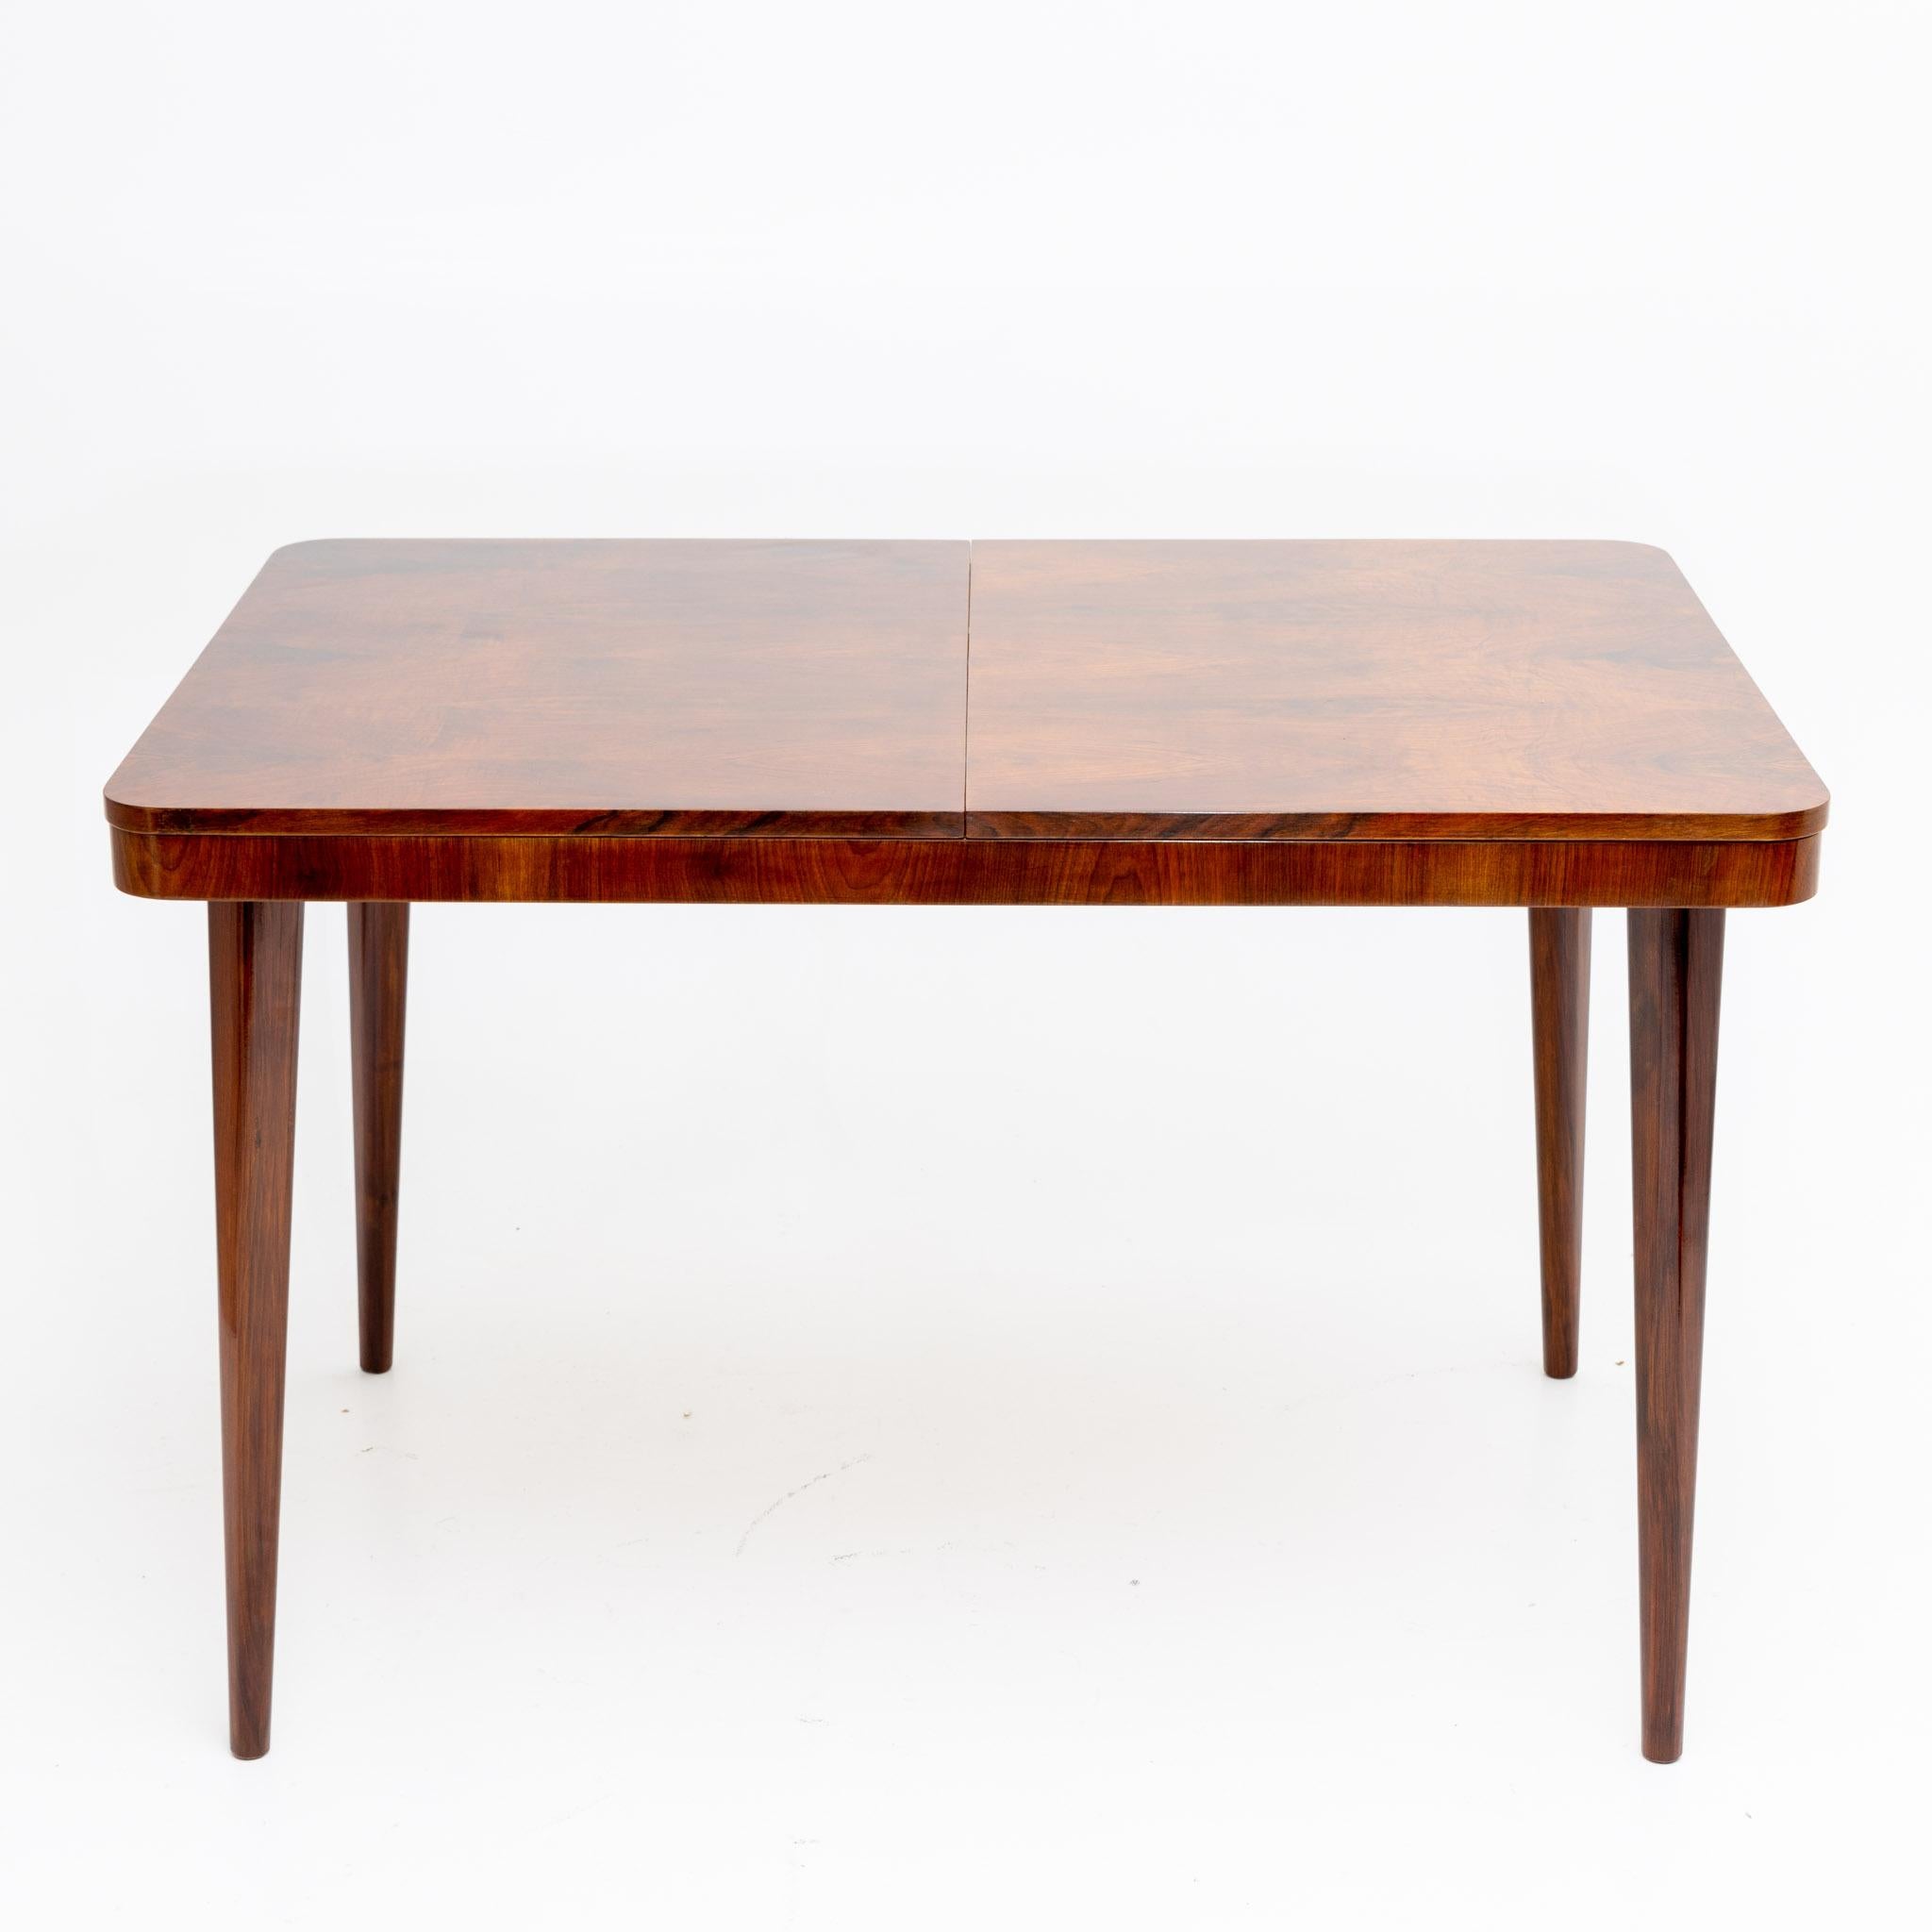 Ausziehbarer Tisch auf vier konischen Beinen mit abgerundeten Ecken. Max. Länge: 170 cm. Restauriert und handpoliert, Etikett auf der Unterseite.